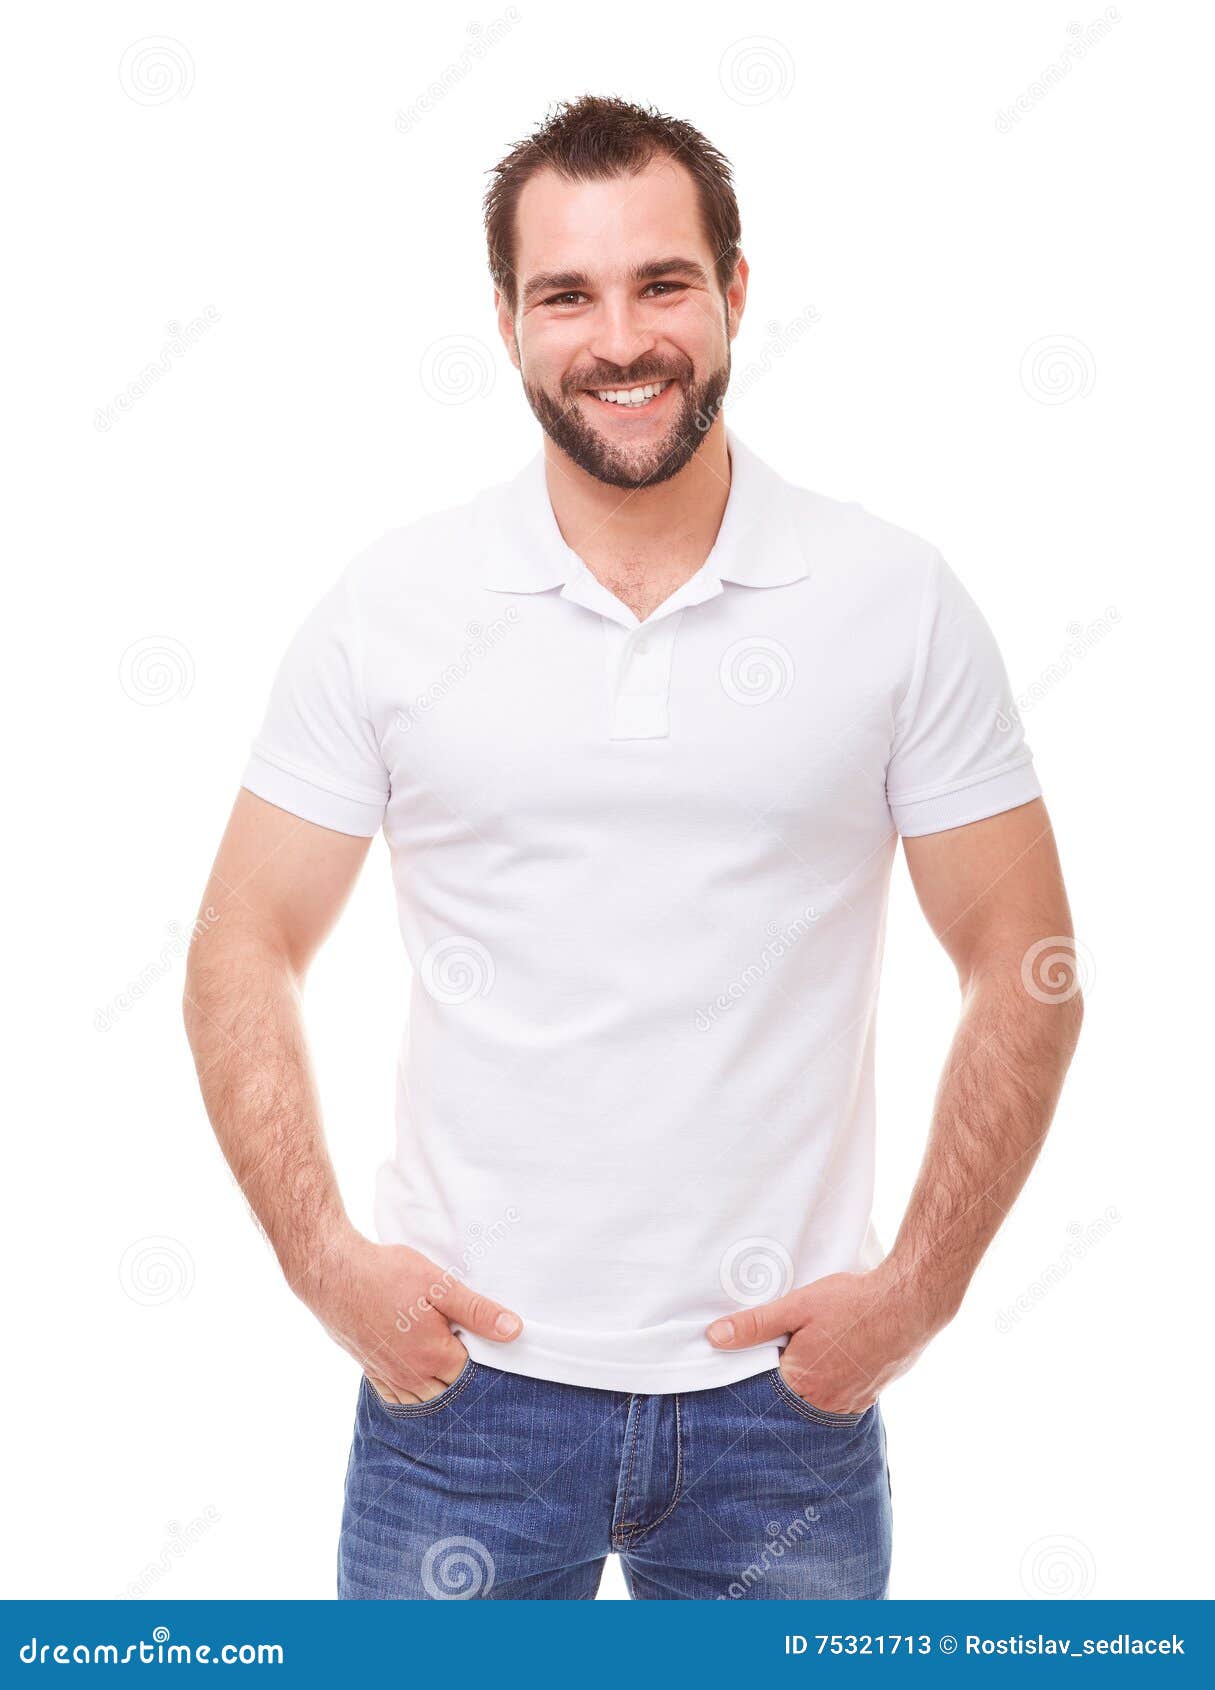 man in a white polo shirt